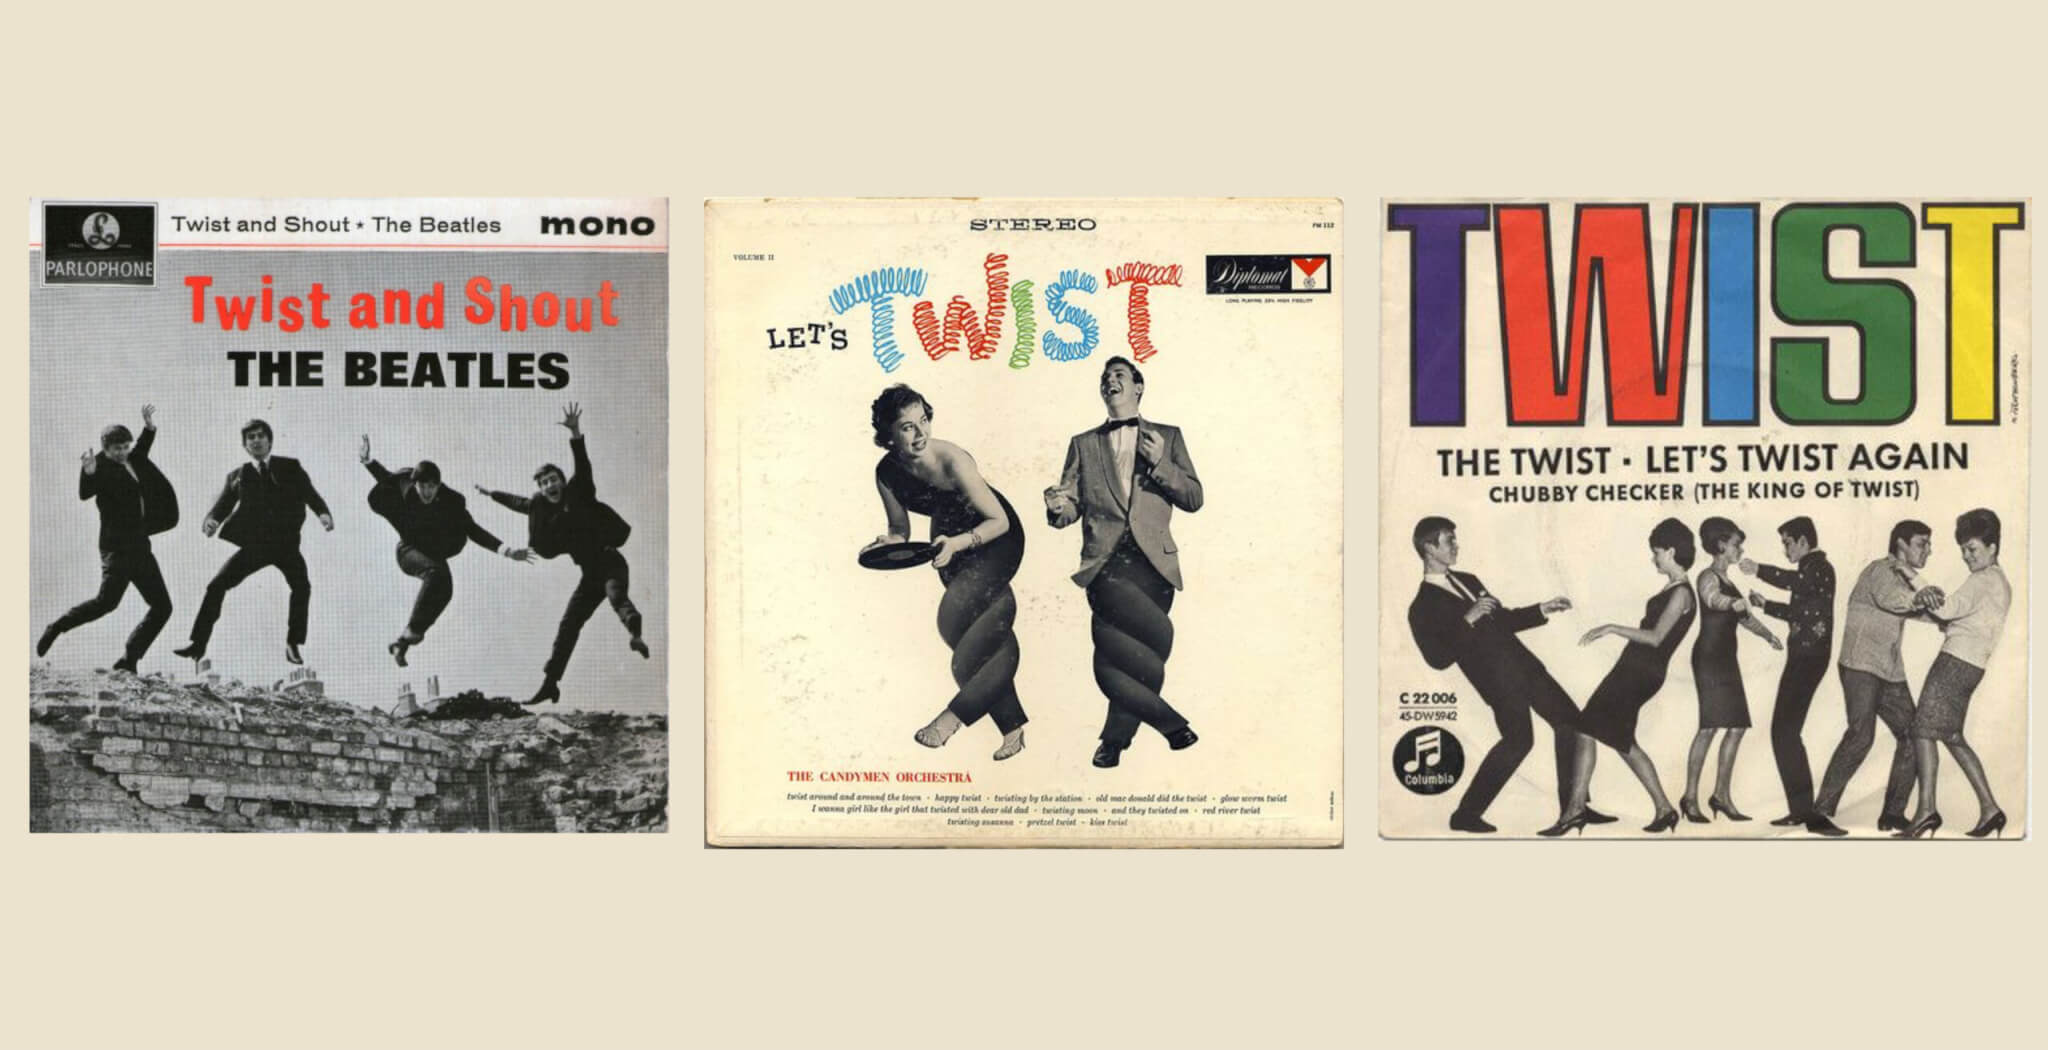 the 1960s twist dance craze